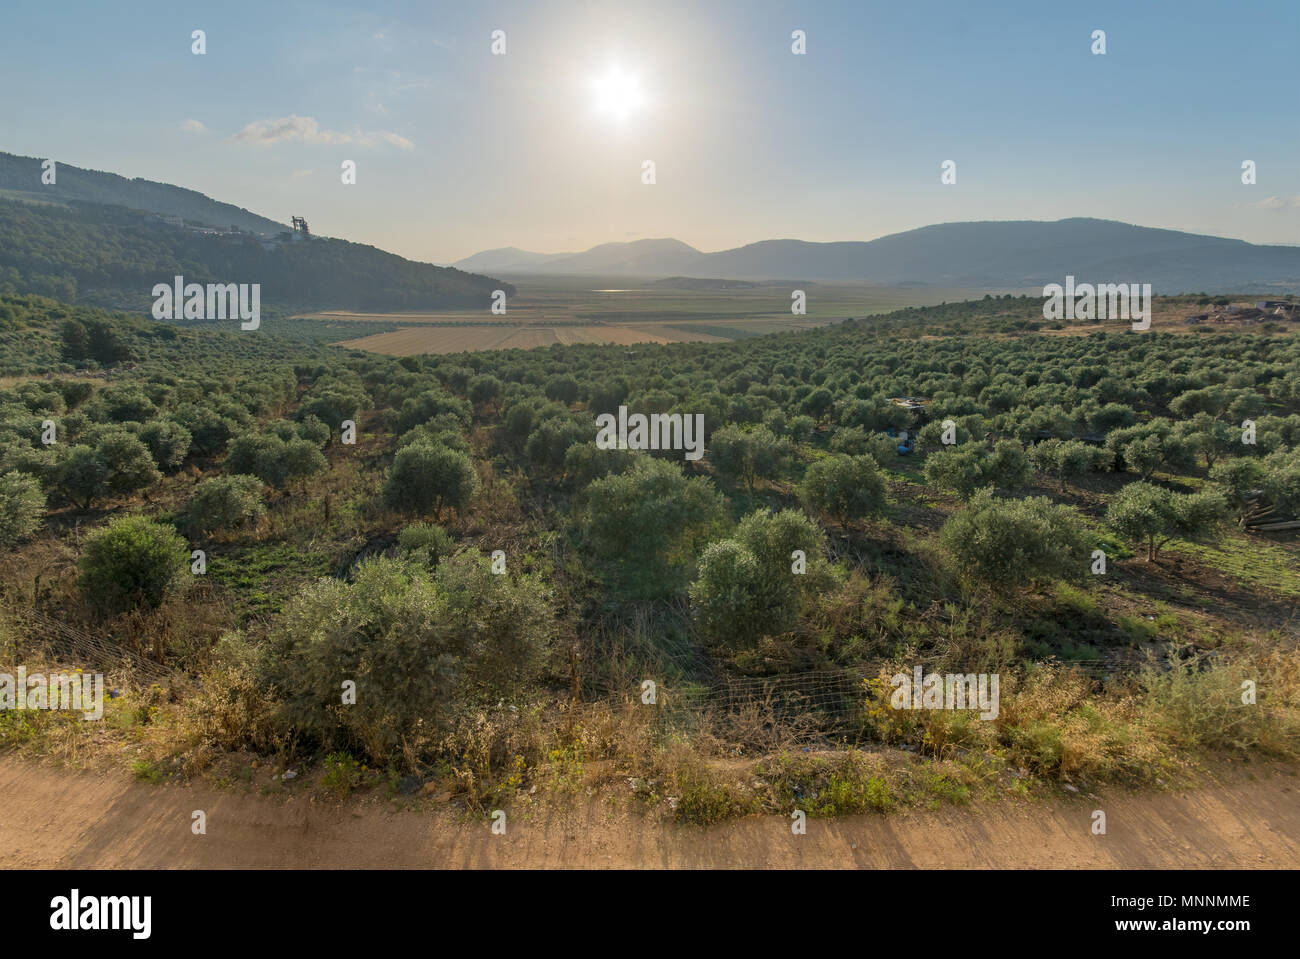 Paysage et campagne dans la vallée de Netofa dans la basse Galilée, dans le nord d'Israël Banque D'Images